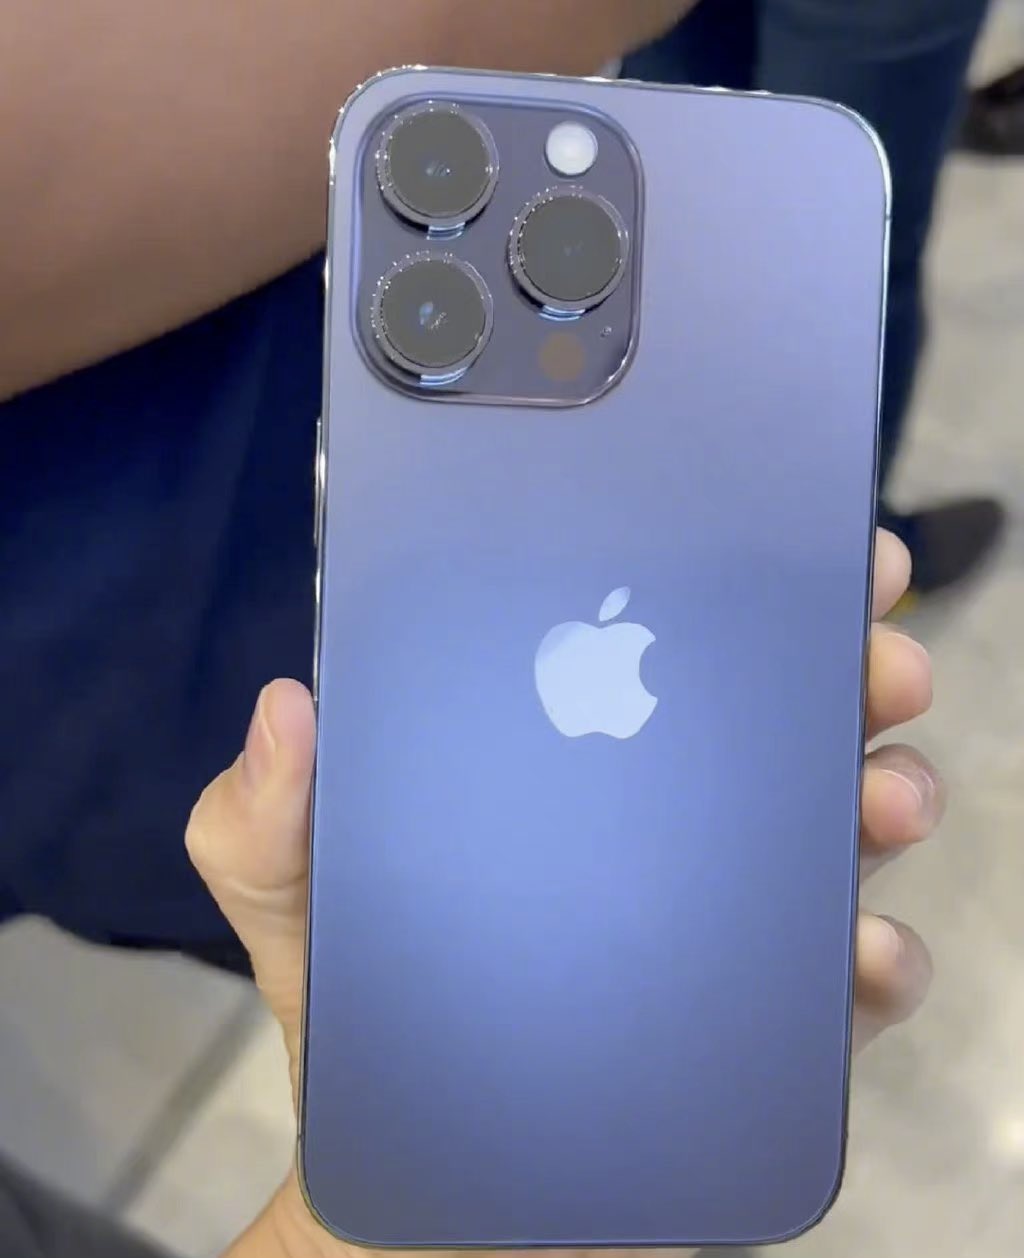 So với công bố ban đầu, màu tím của iPhone 14 Pro Max được đánh giá là đẹp hơn nhiều. Với sự nâng cấp về thiết kế và tính năng, chiếc smartphone này đang là tâm điểm của sự chú ý của giới công nghệ. Hãy xem hình ảnh để xác minh sự khác biệt của màu tím iPhone 14 Pro Max.